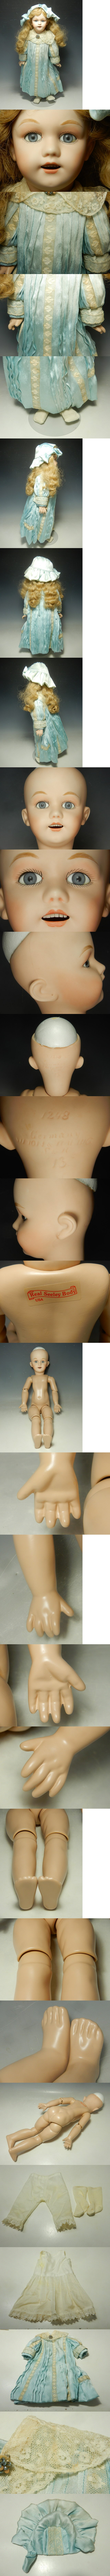 好評大人気989/○ビスクドール オープンマウス 女の子 アンティーク 西洋人形 陶器人形 SIMON & HALBIG S&H 1248 刻印在 Real Seeley Body USA ビスクドール